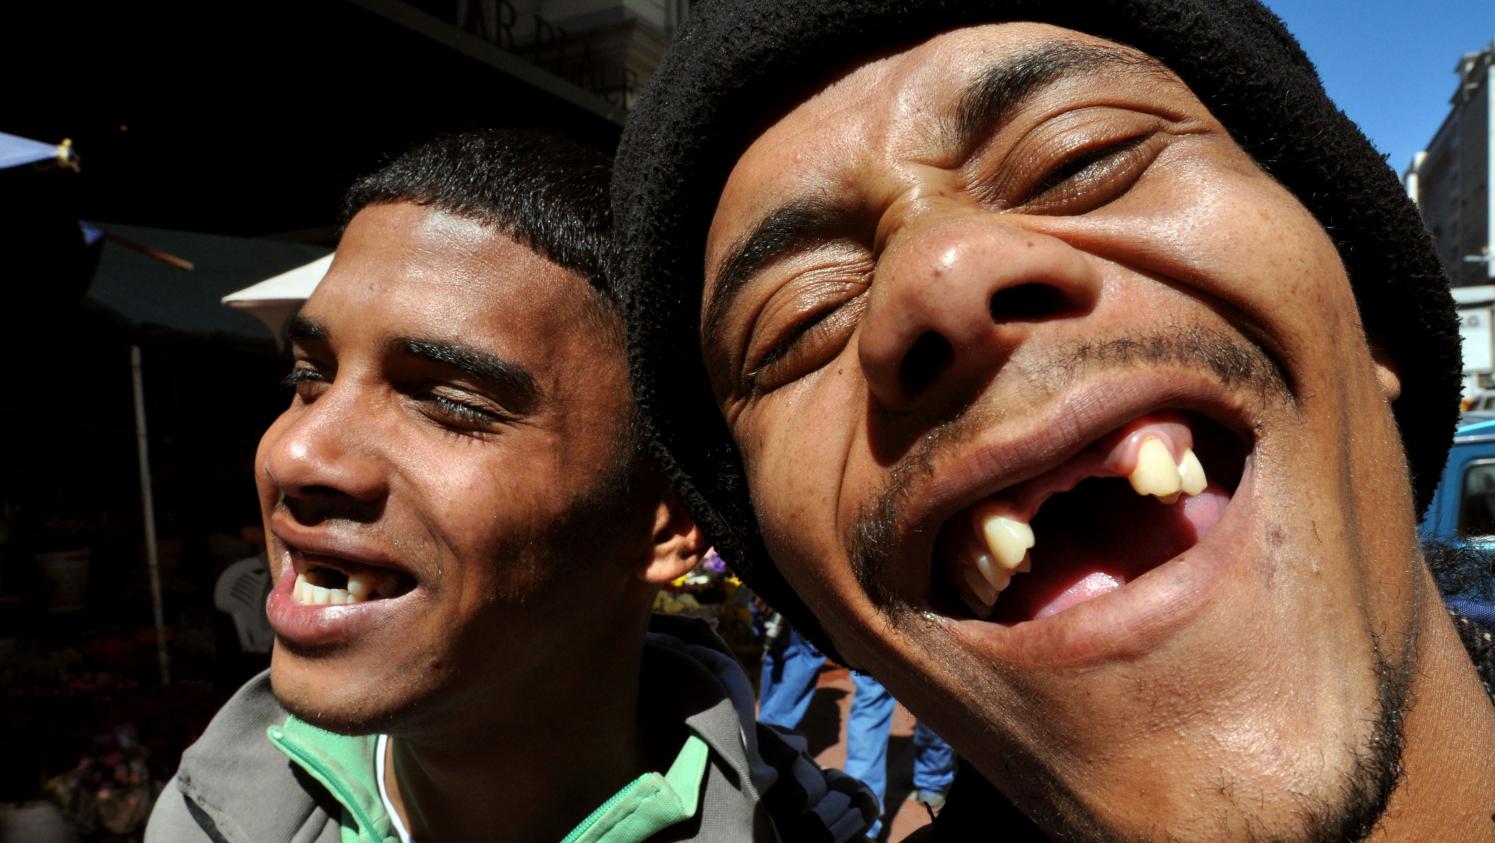 Afrique du Sud : les habitants se font arracher les dents pour... être plus beaux